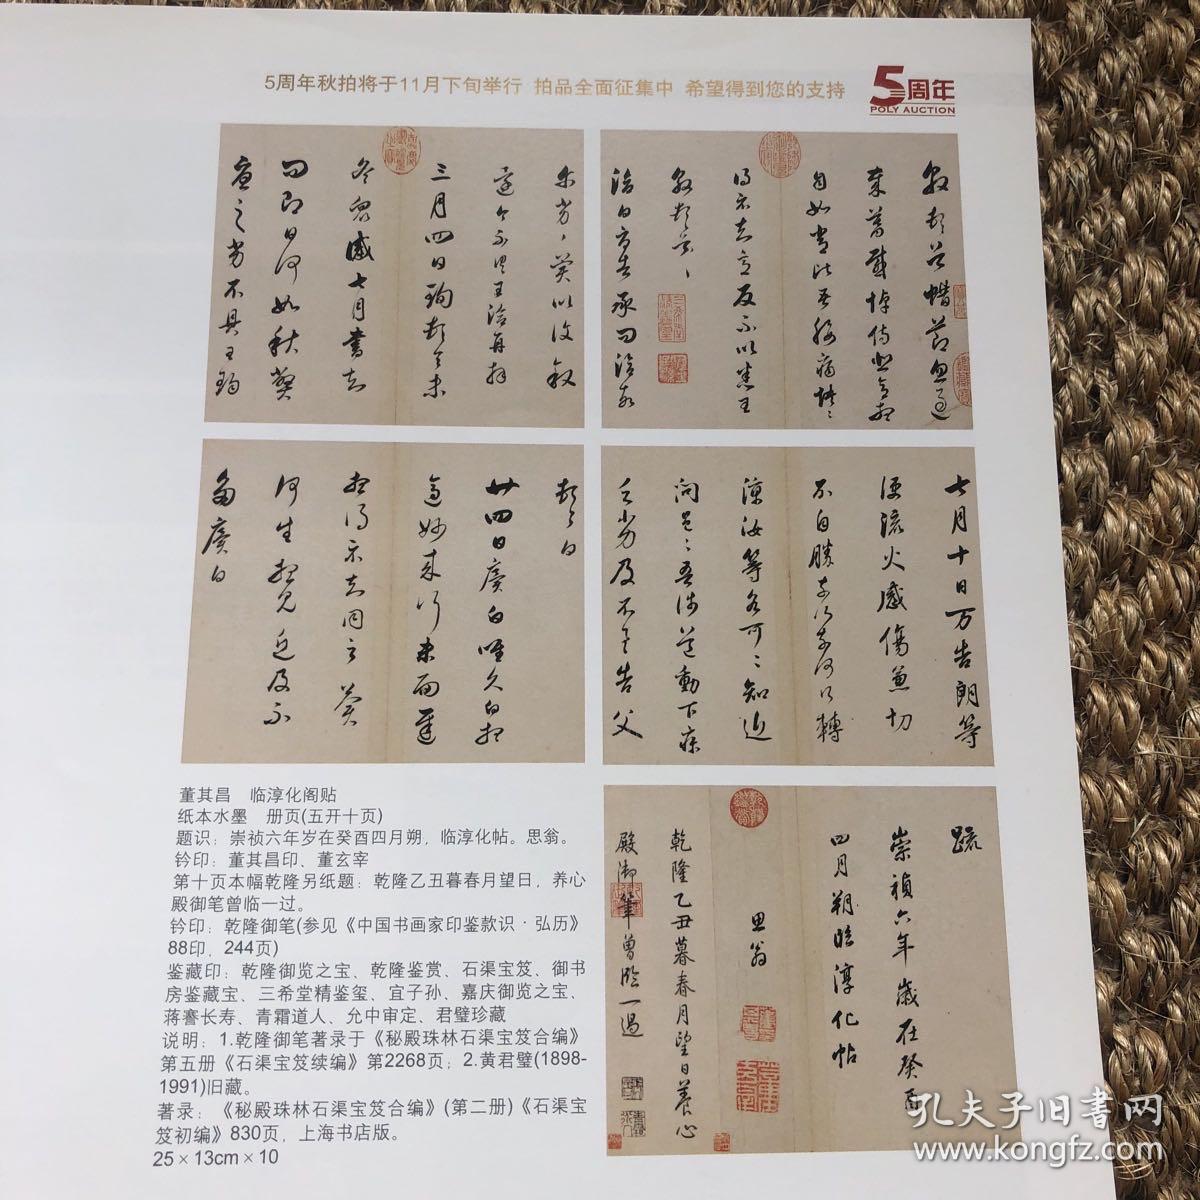 北京保利国际拍卖有限公司5周年秋季拍卖会预告图册